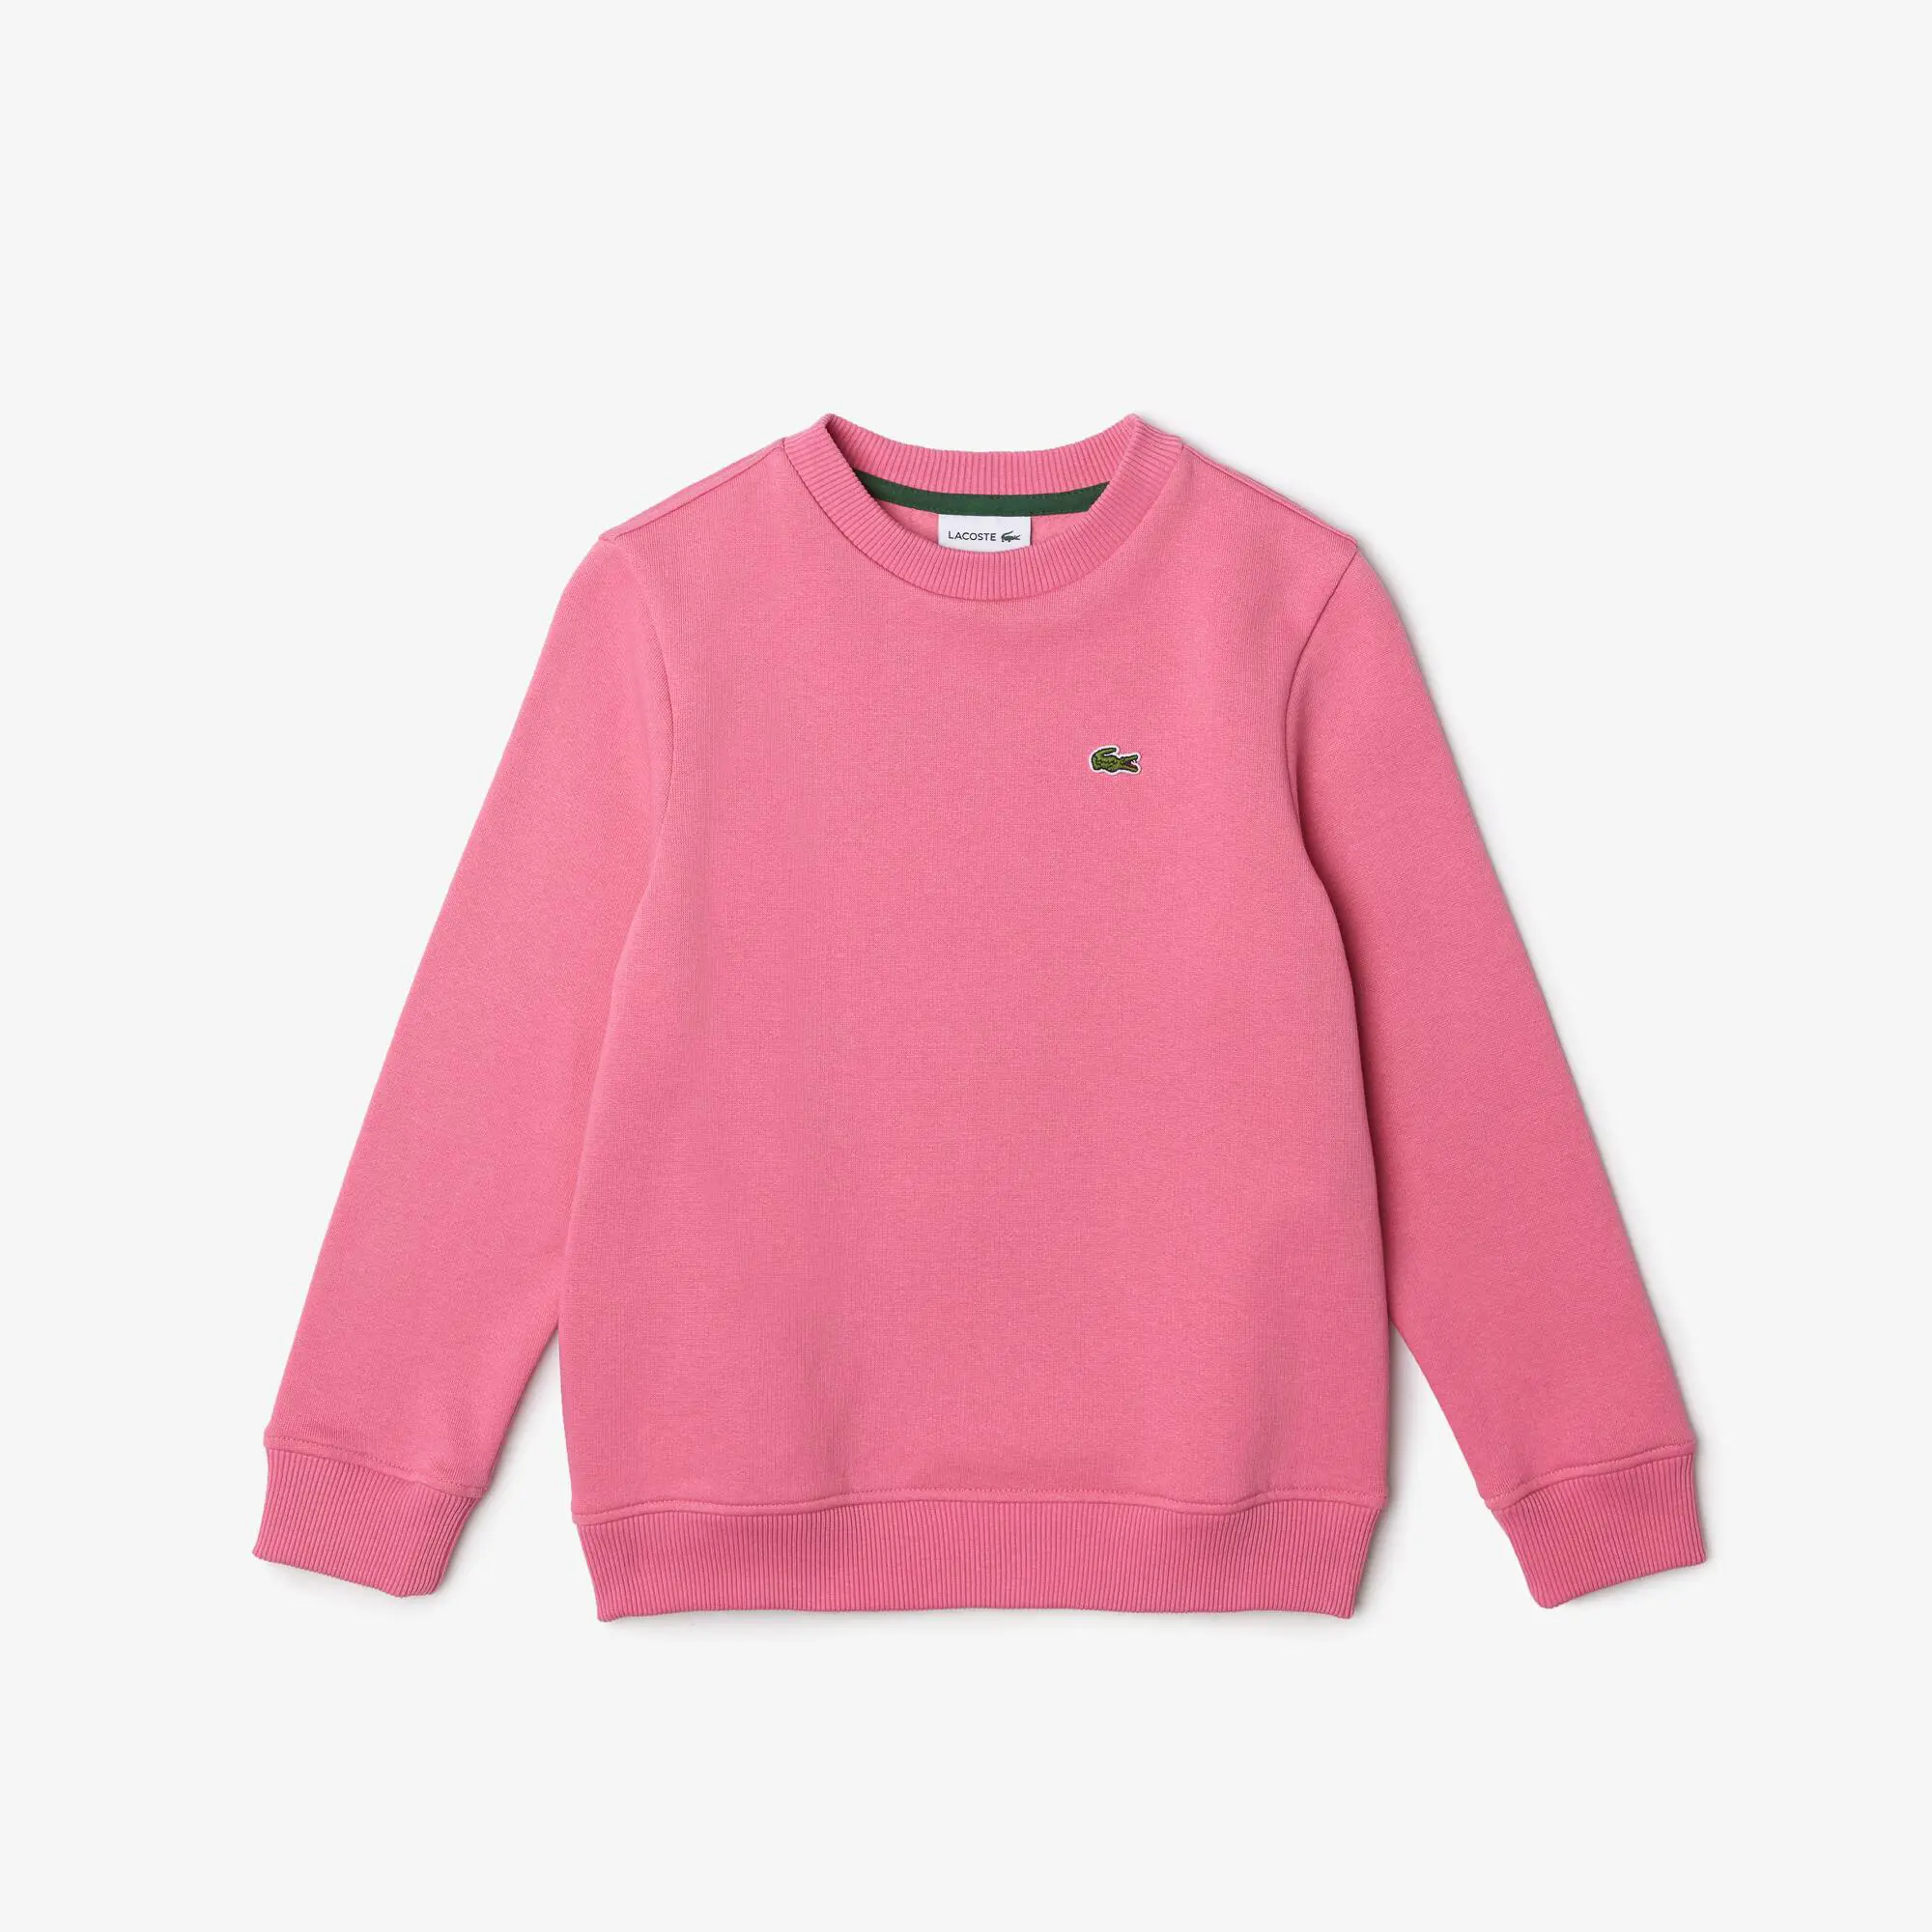 Lacoste Kids’ Lacoste Organic Cotton Flannel Sweatshirt. 2